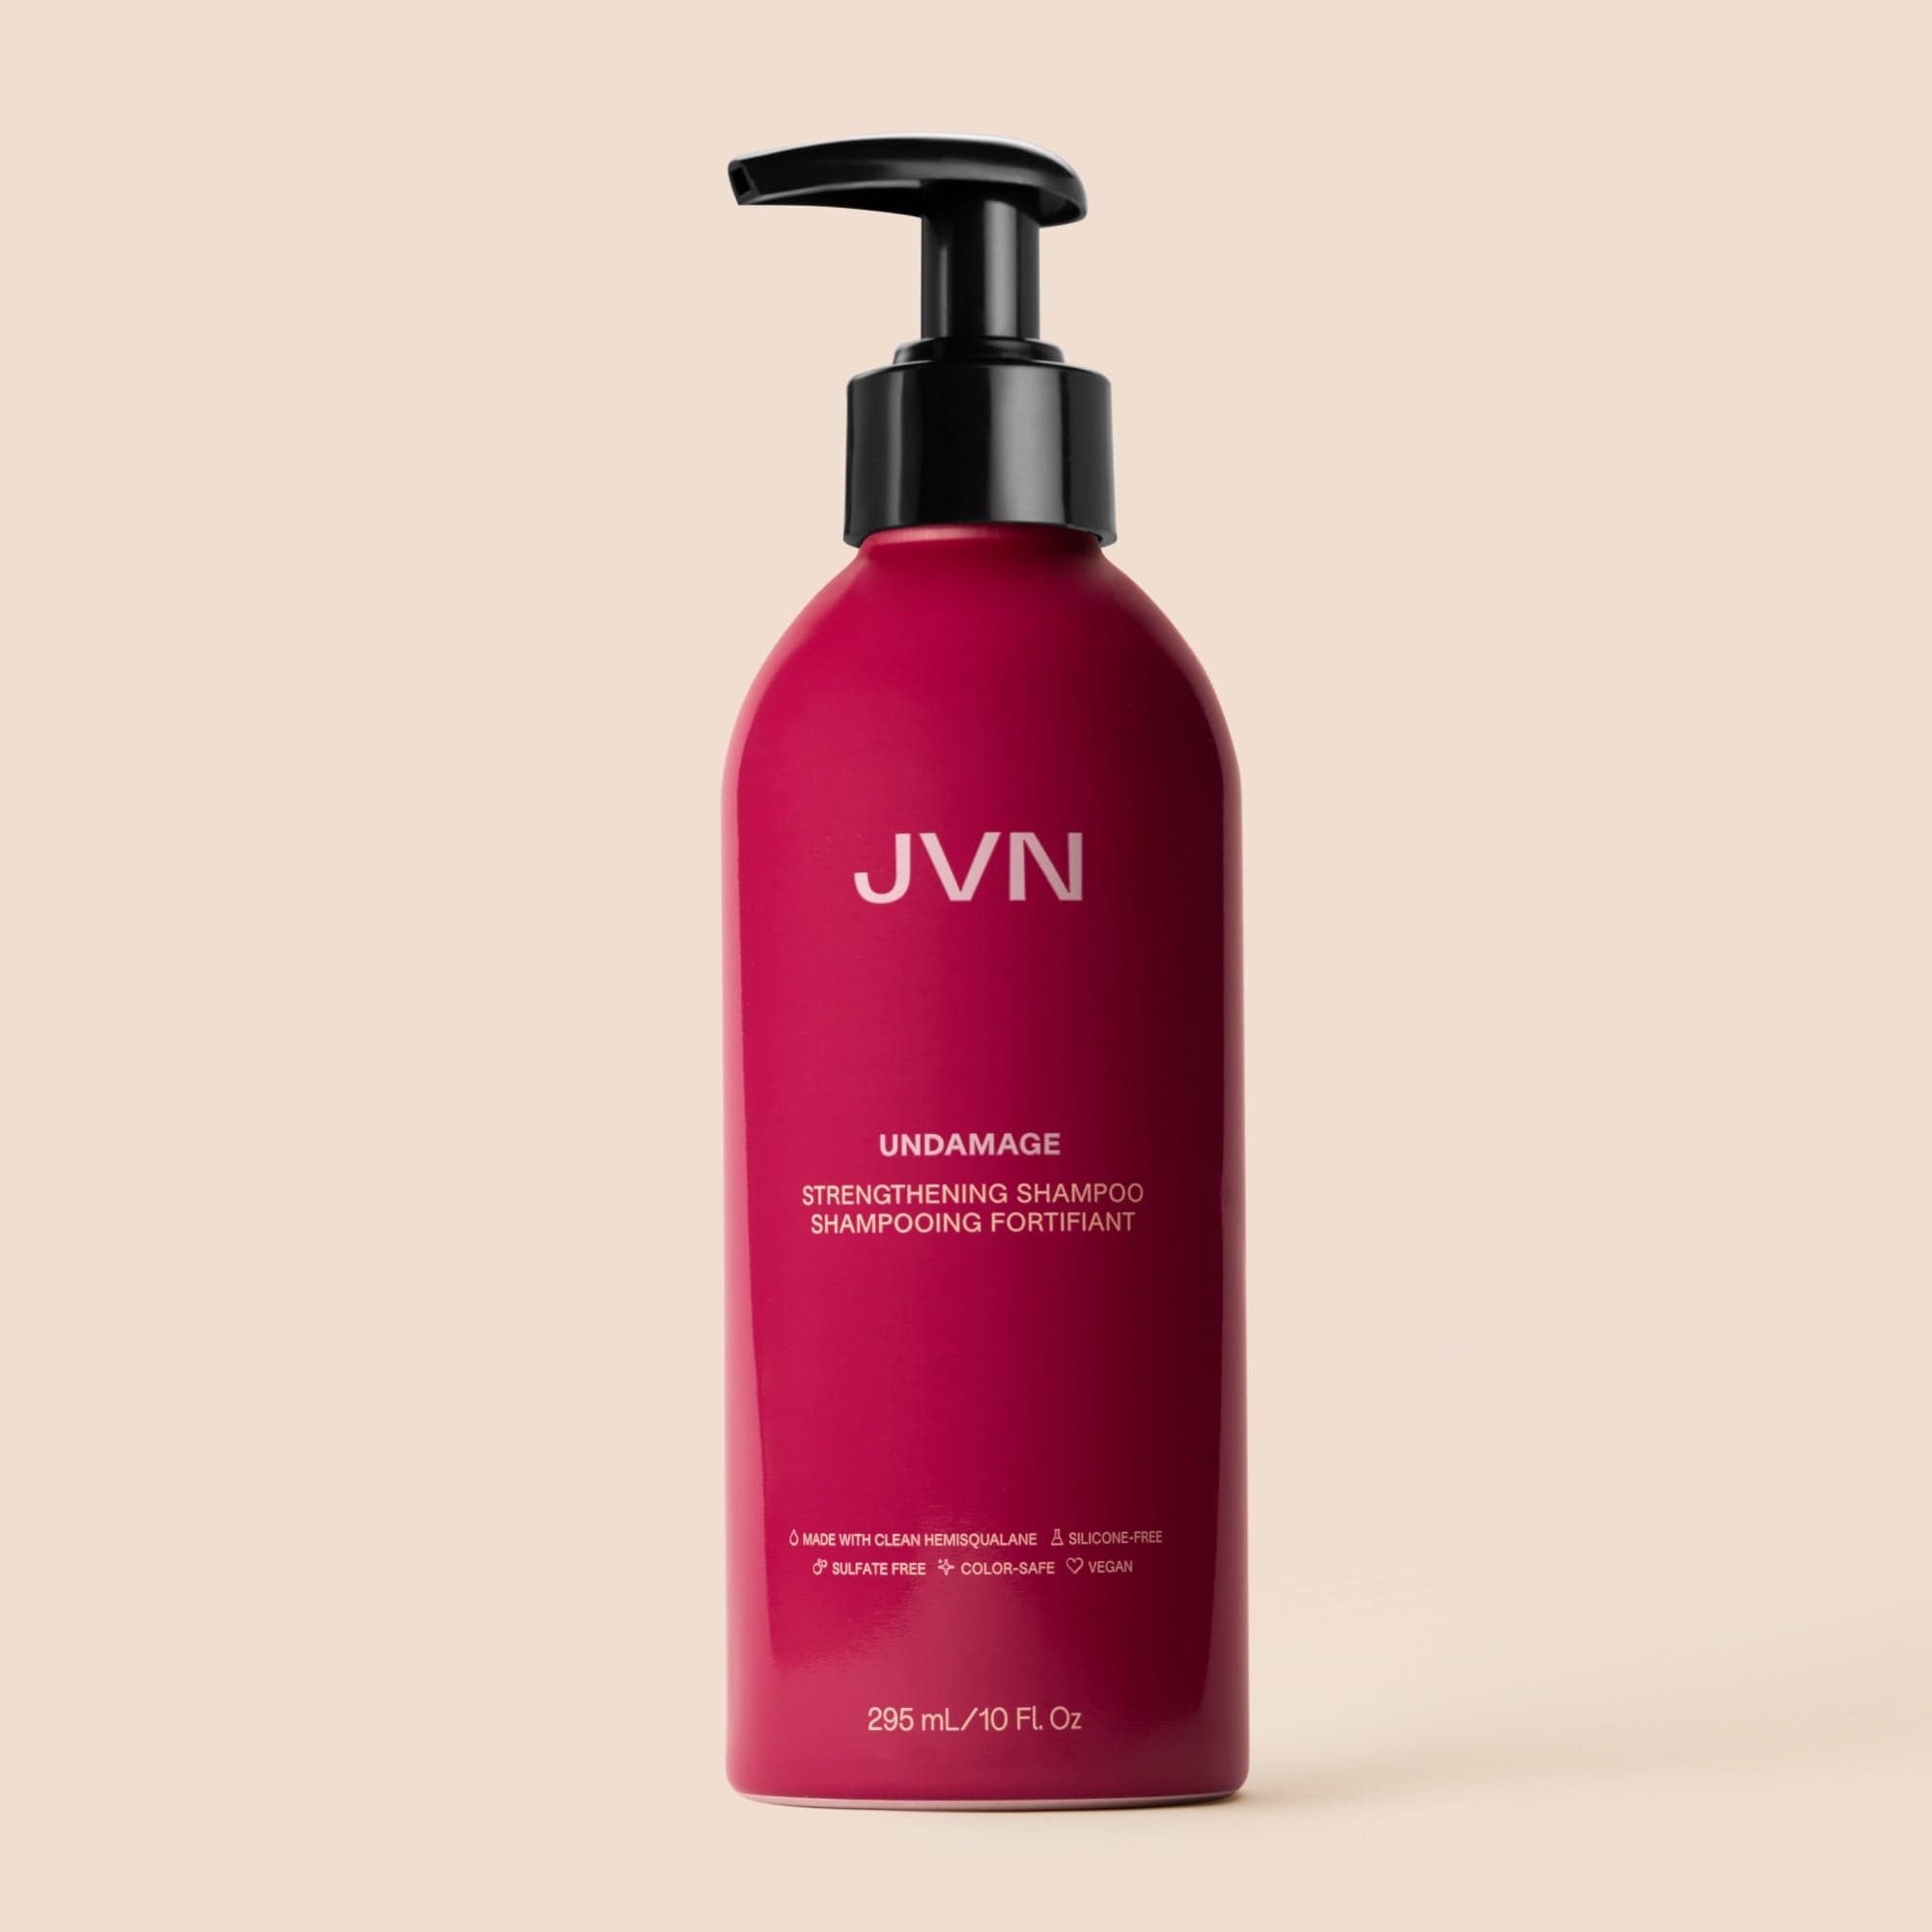 JVN Shampoo Undamage Strengthening Shampoo Undamage Strengthening Shampoo | Reparative Shampoo Products | JVN sulfate-free silicone-free sustainable